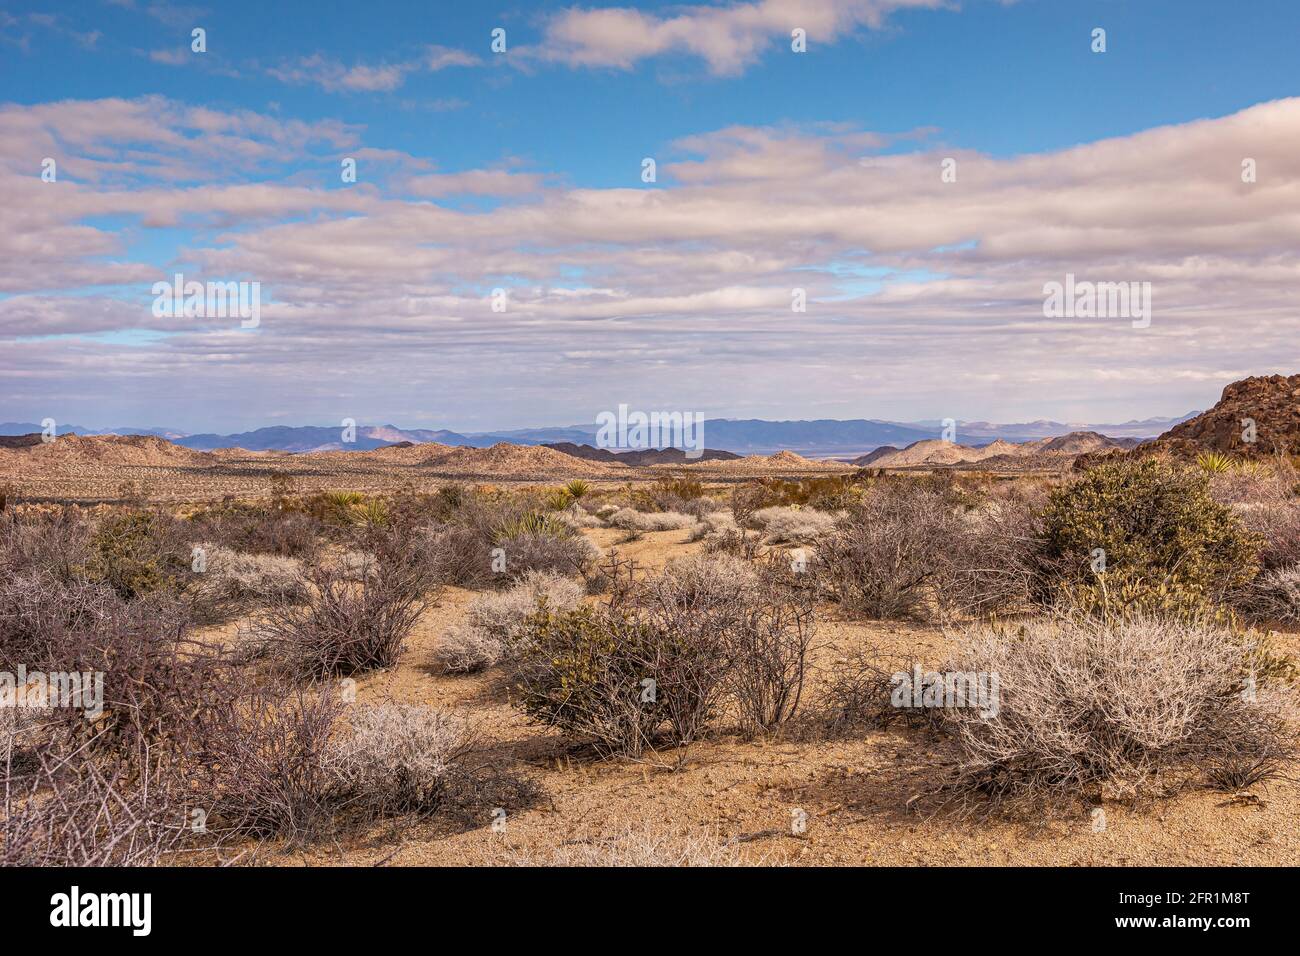 Joshua Tree National Park, CA, Etats-Unis - 30 décembre 2012 : grand paysage beige desolate éclairé par le soleil avec la végétation cactus et les montagnes sur l'horizontale Banque D'Images